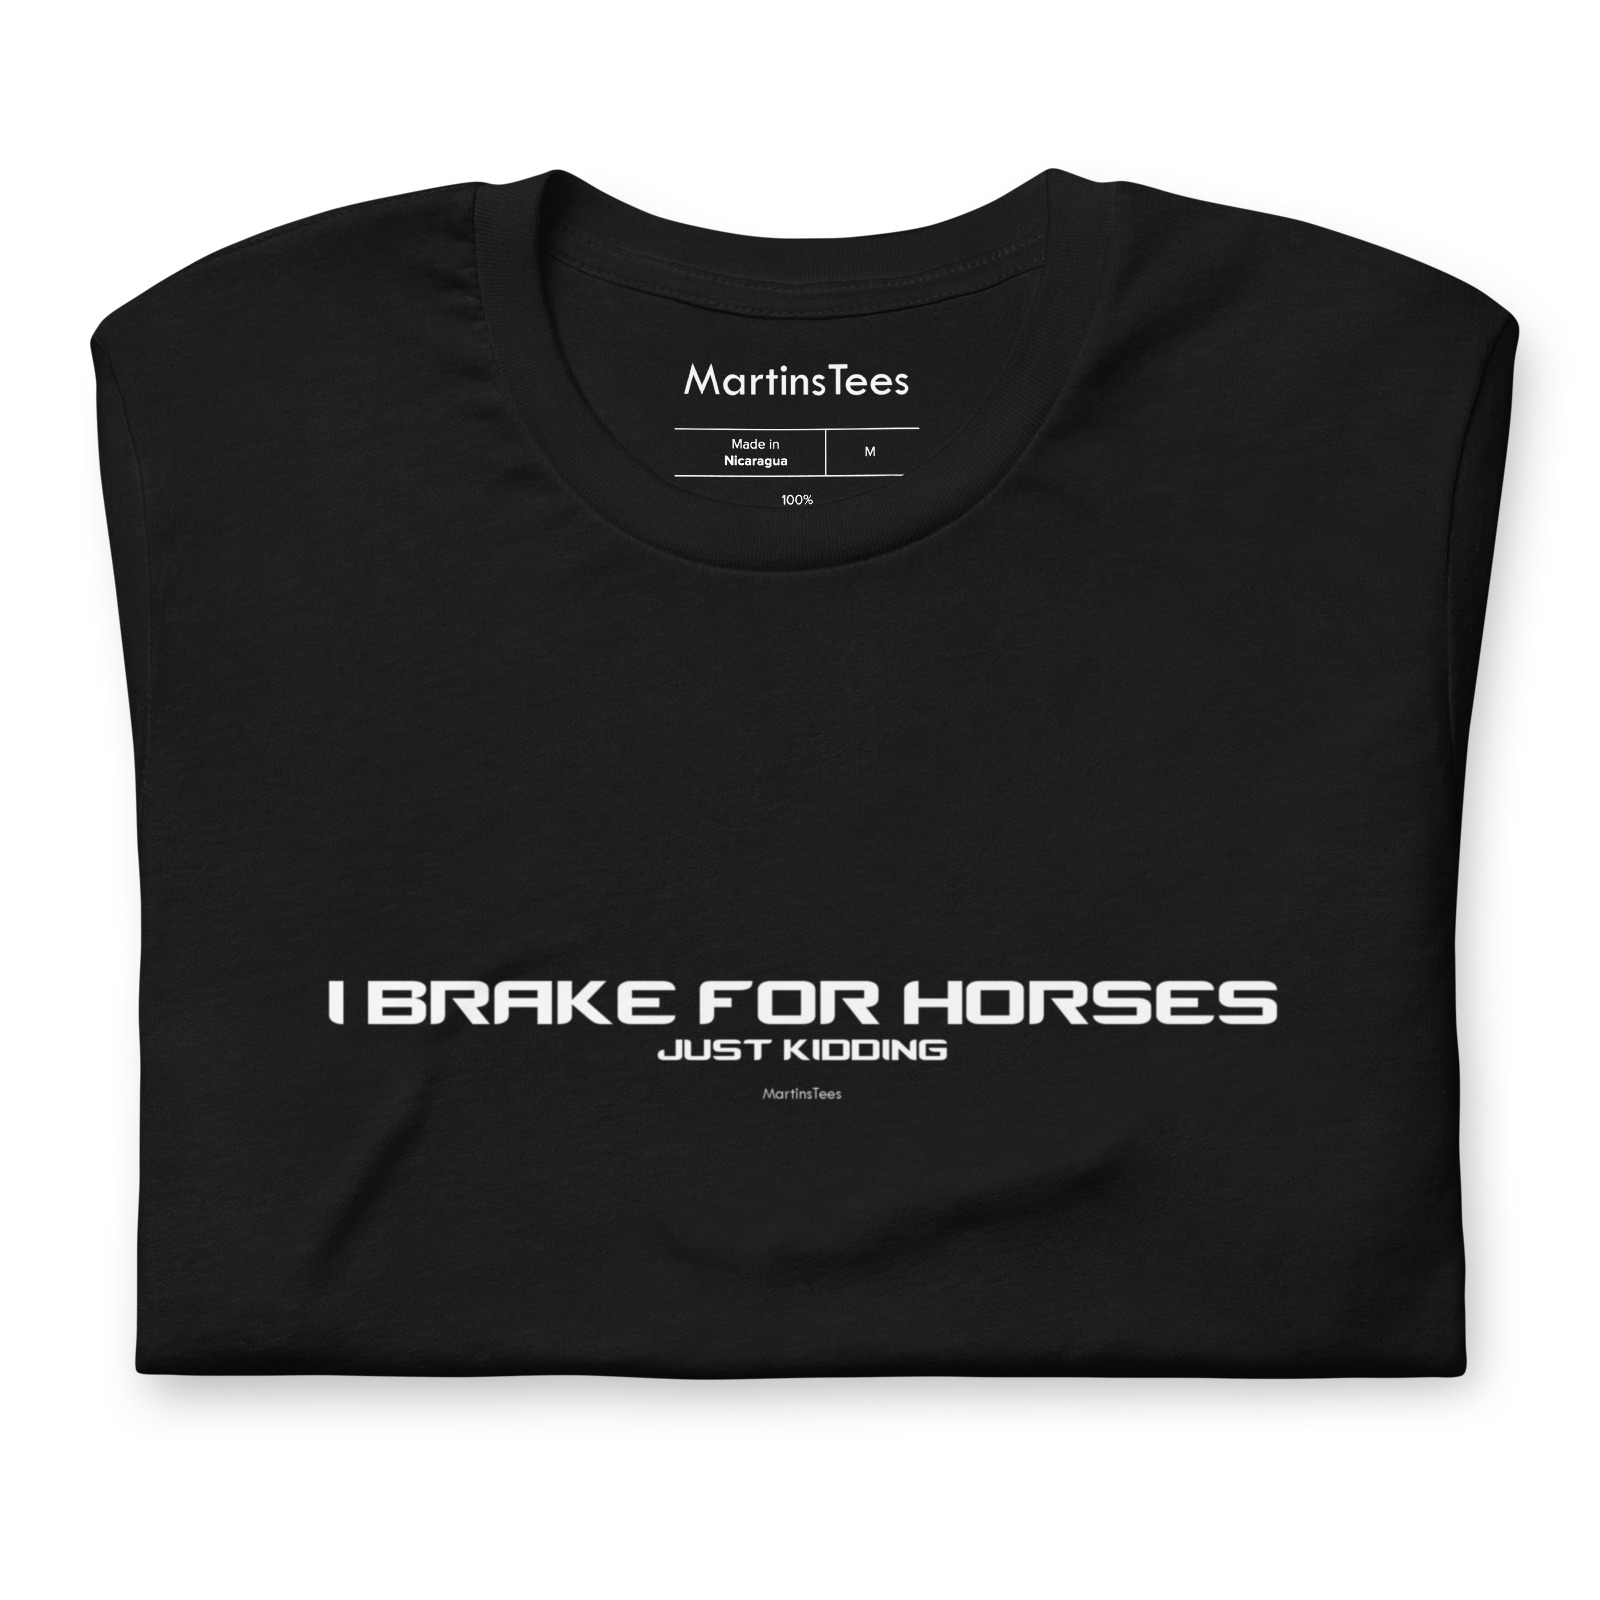 T-shirt: I BRAKE FOR HORSES - JUST KIDDING